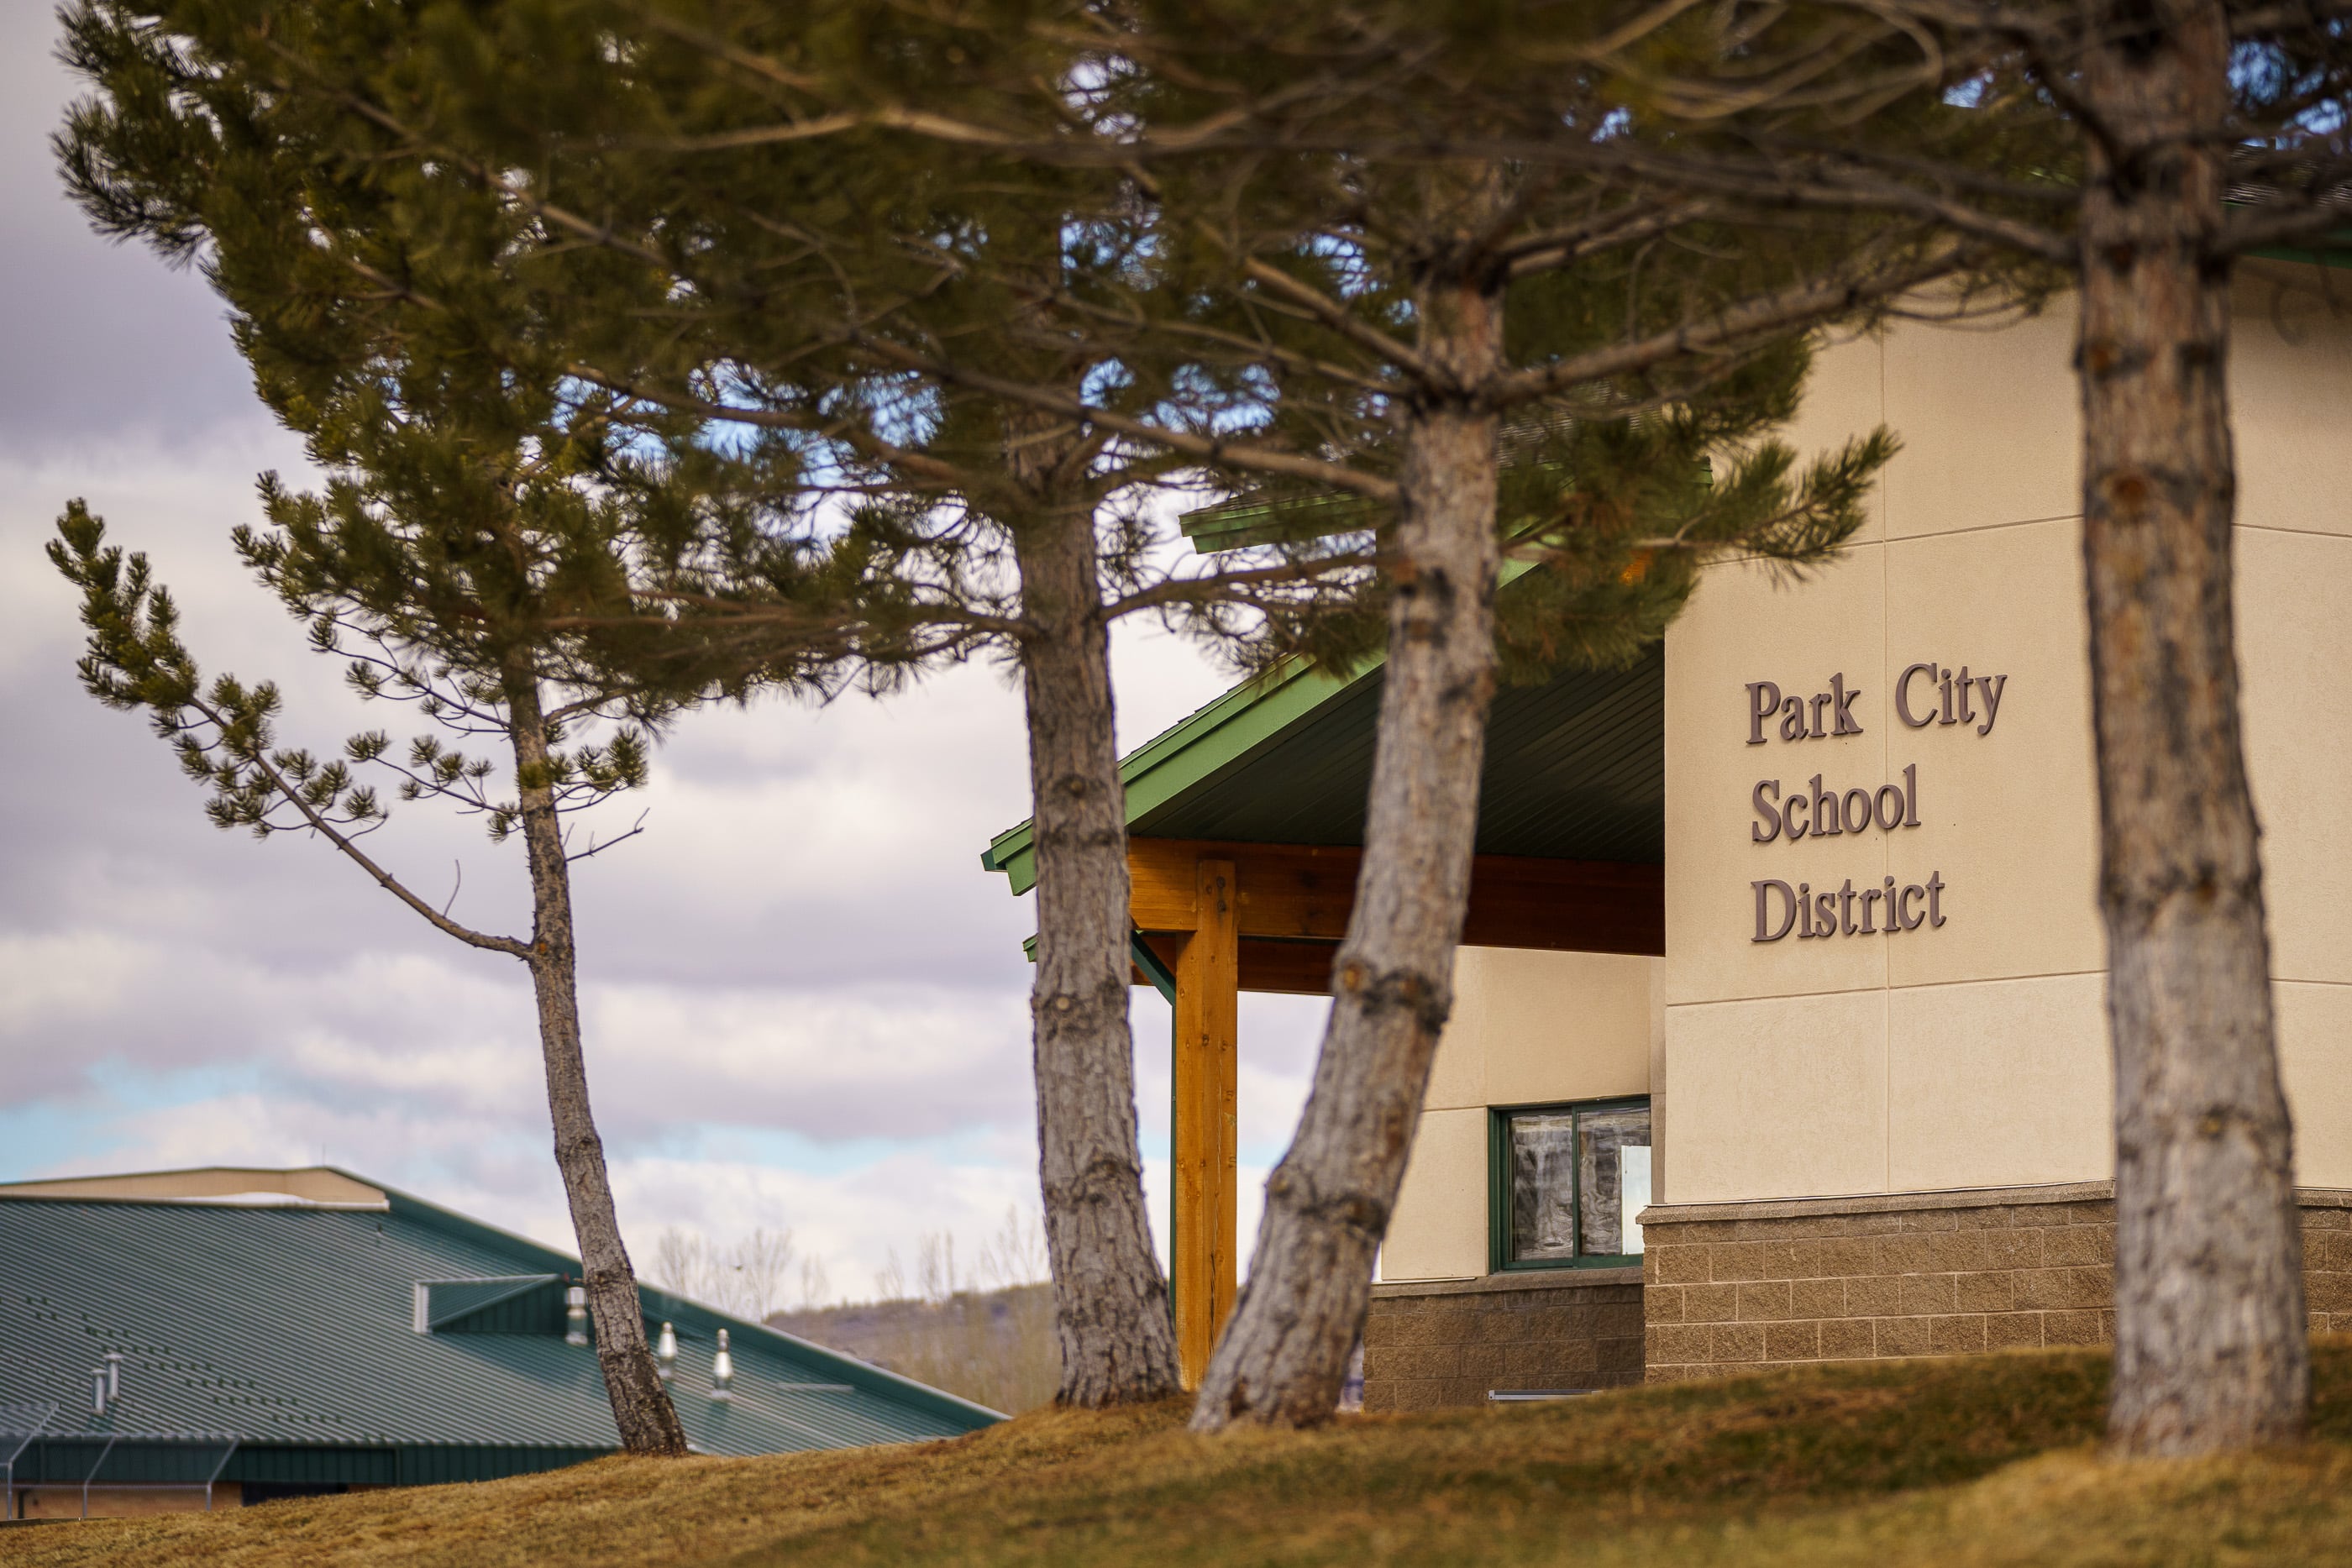 (Trent Nelson | The Salt Lake Tribune) The Park City School District offices in Park City.